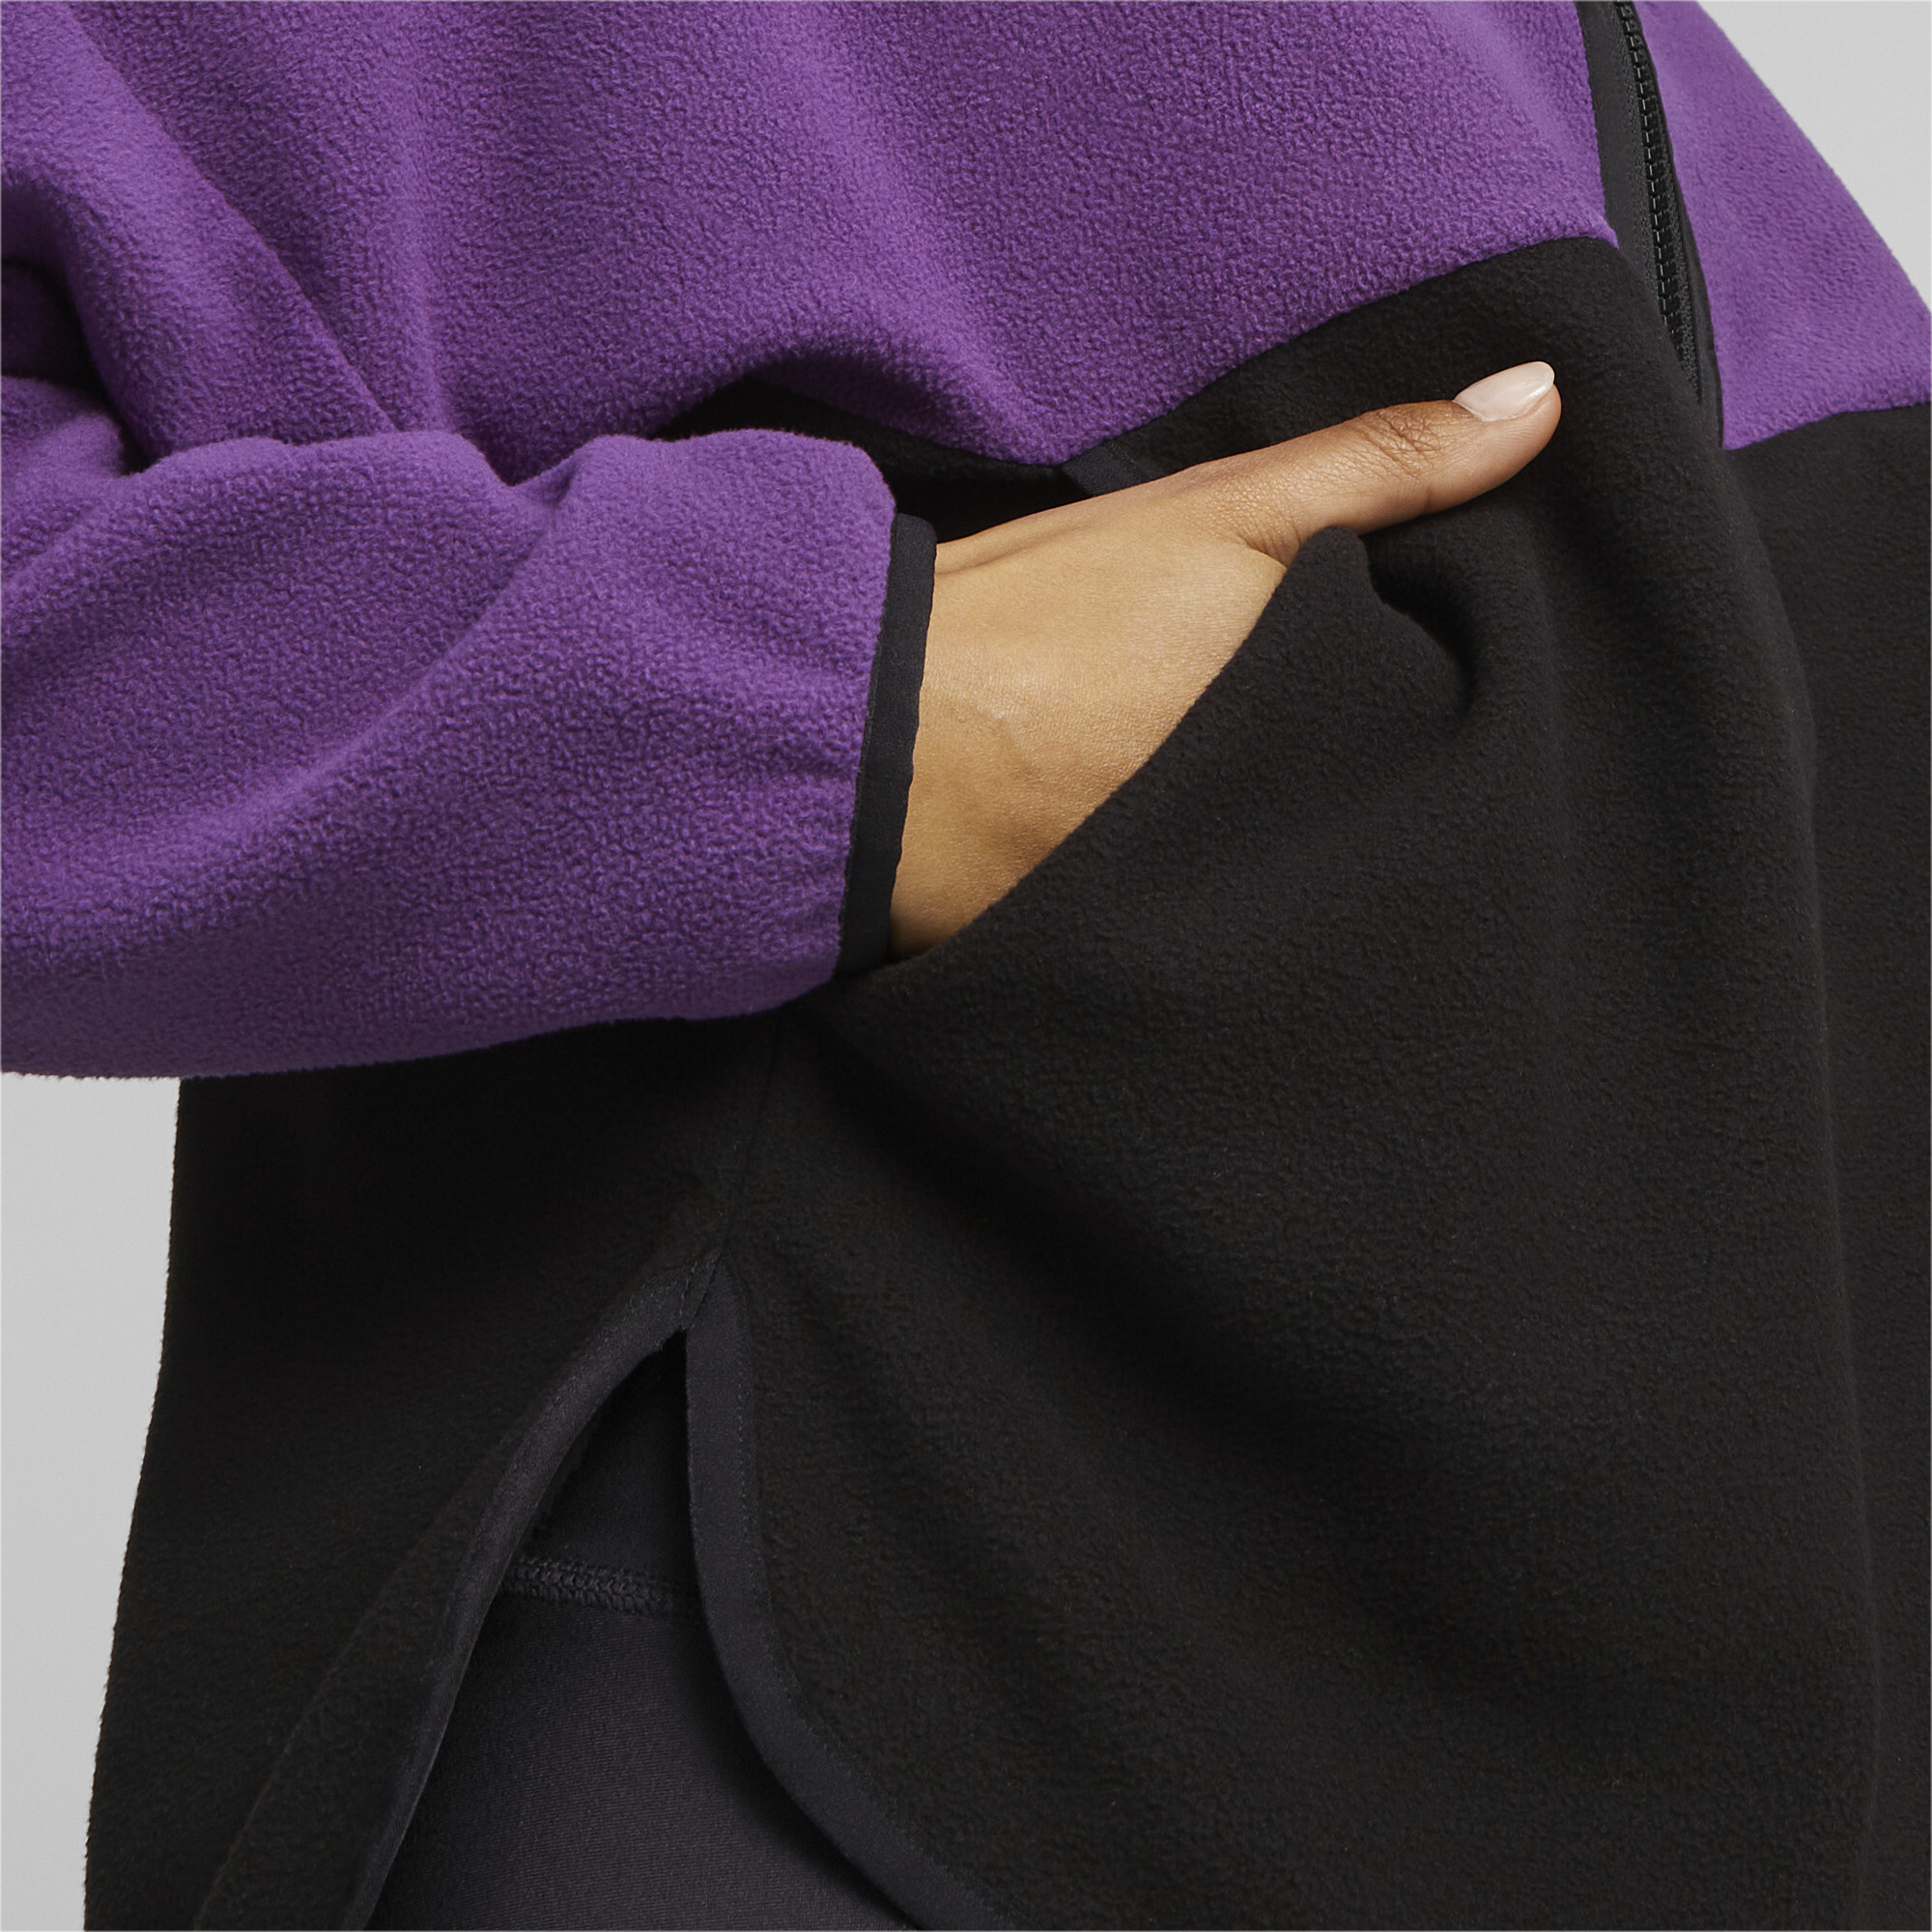 Women's PUMA Fit Training Polar Fleece Top In Purple, Size XS